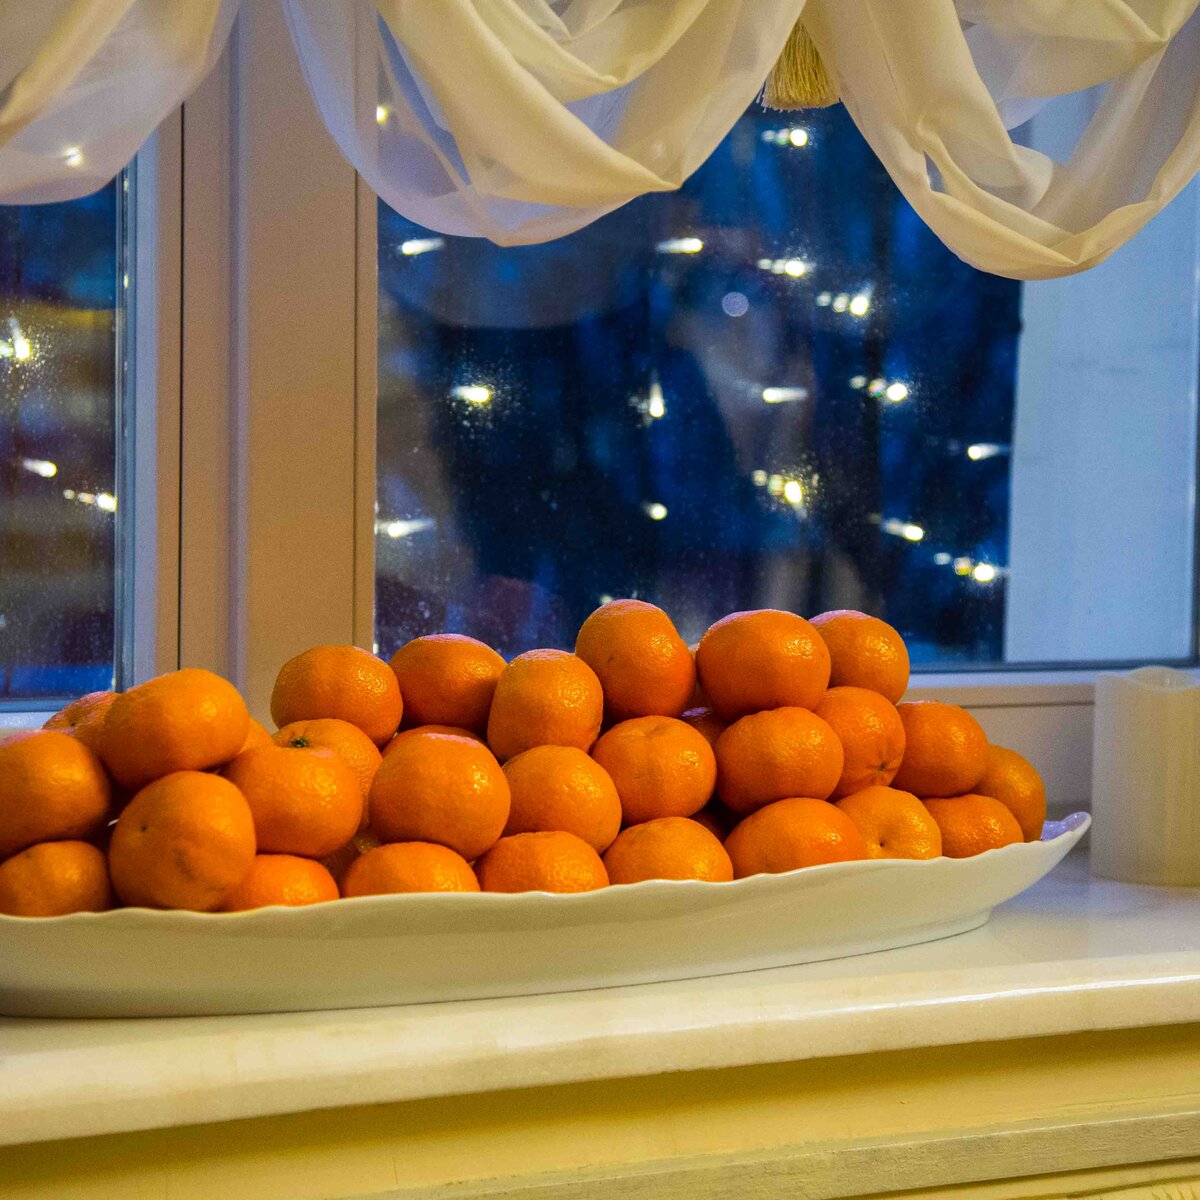 Мандарин орел. Мандарины в тарелке. Турецкие мандарины. Мандарины на окне. Большой мандарин.